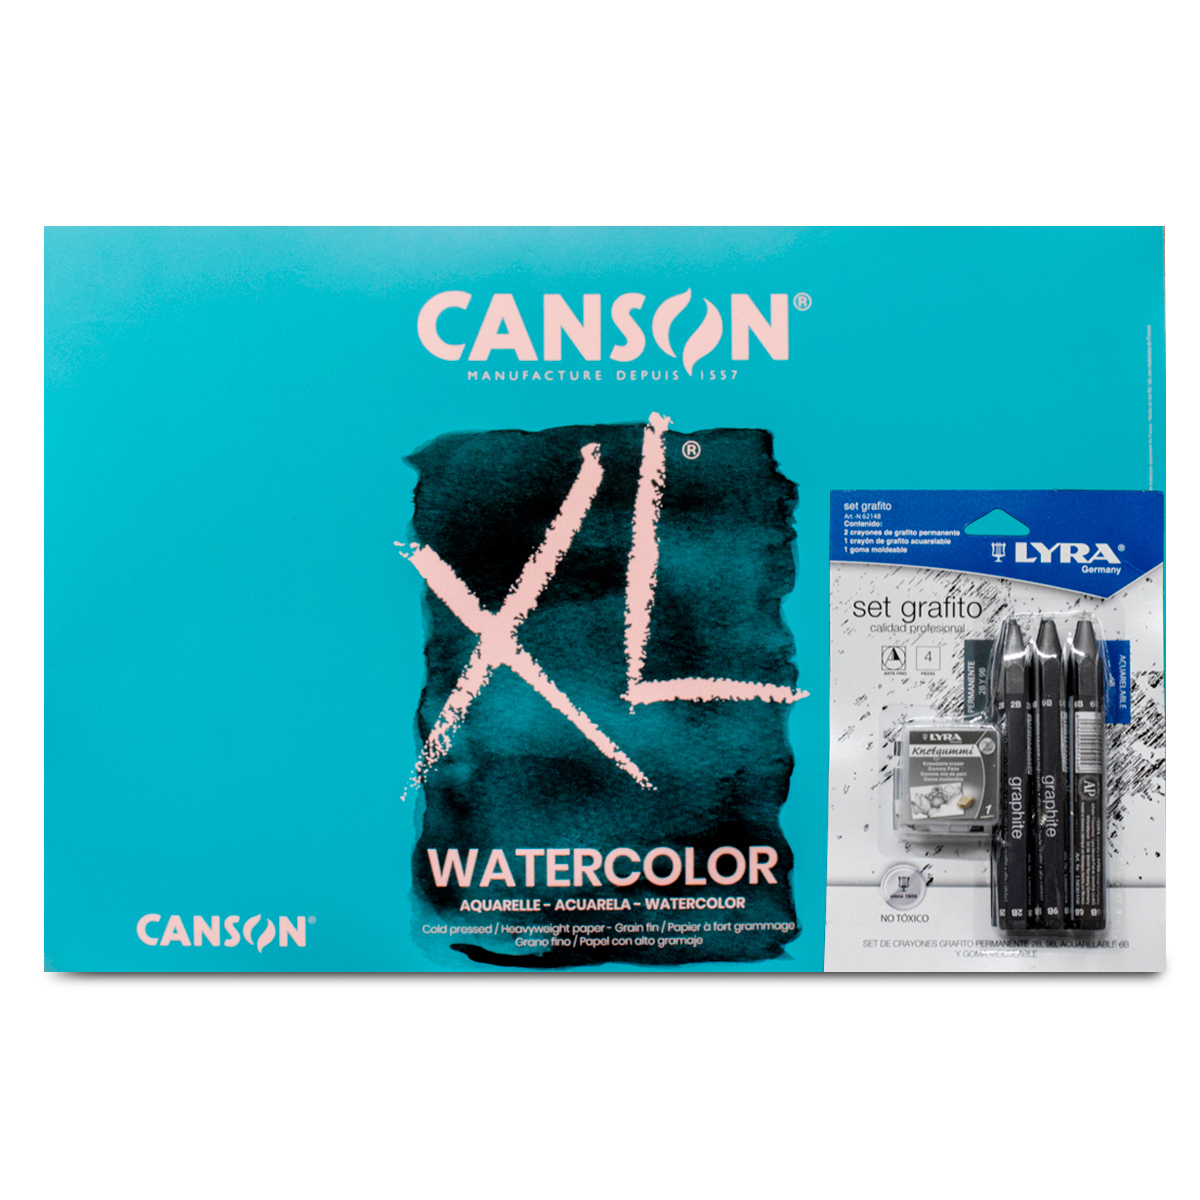 Bloc de dibujo Canson XL A4 reciclado - Cuaderno - Los mejores precios